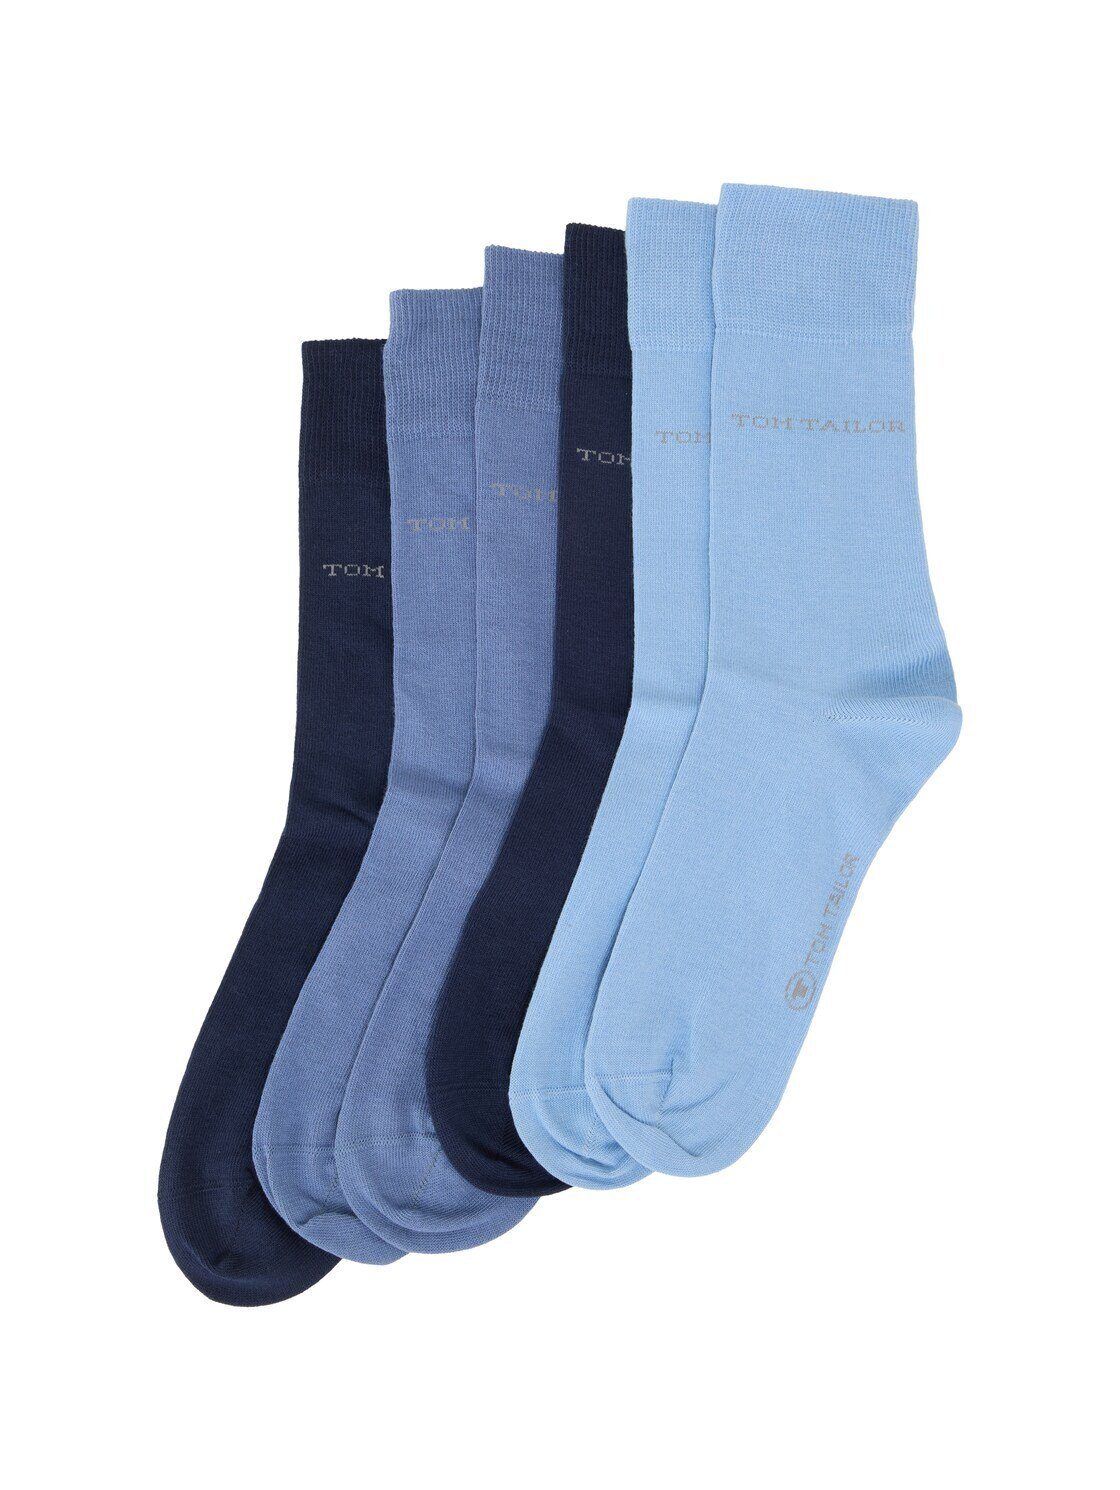 TOM TAILOR Socken 6er-Set Socken (im Sechserpack)